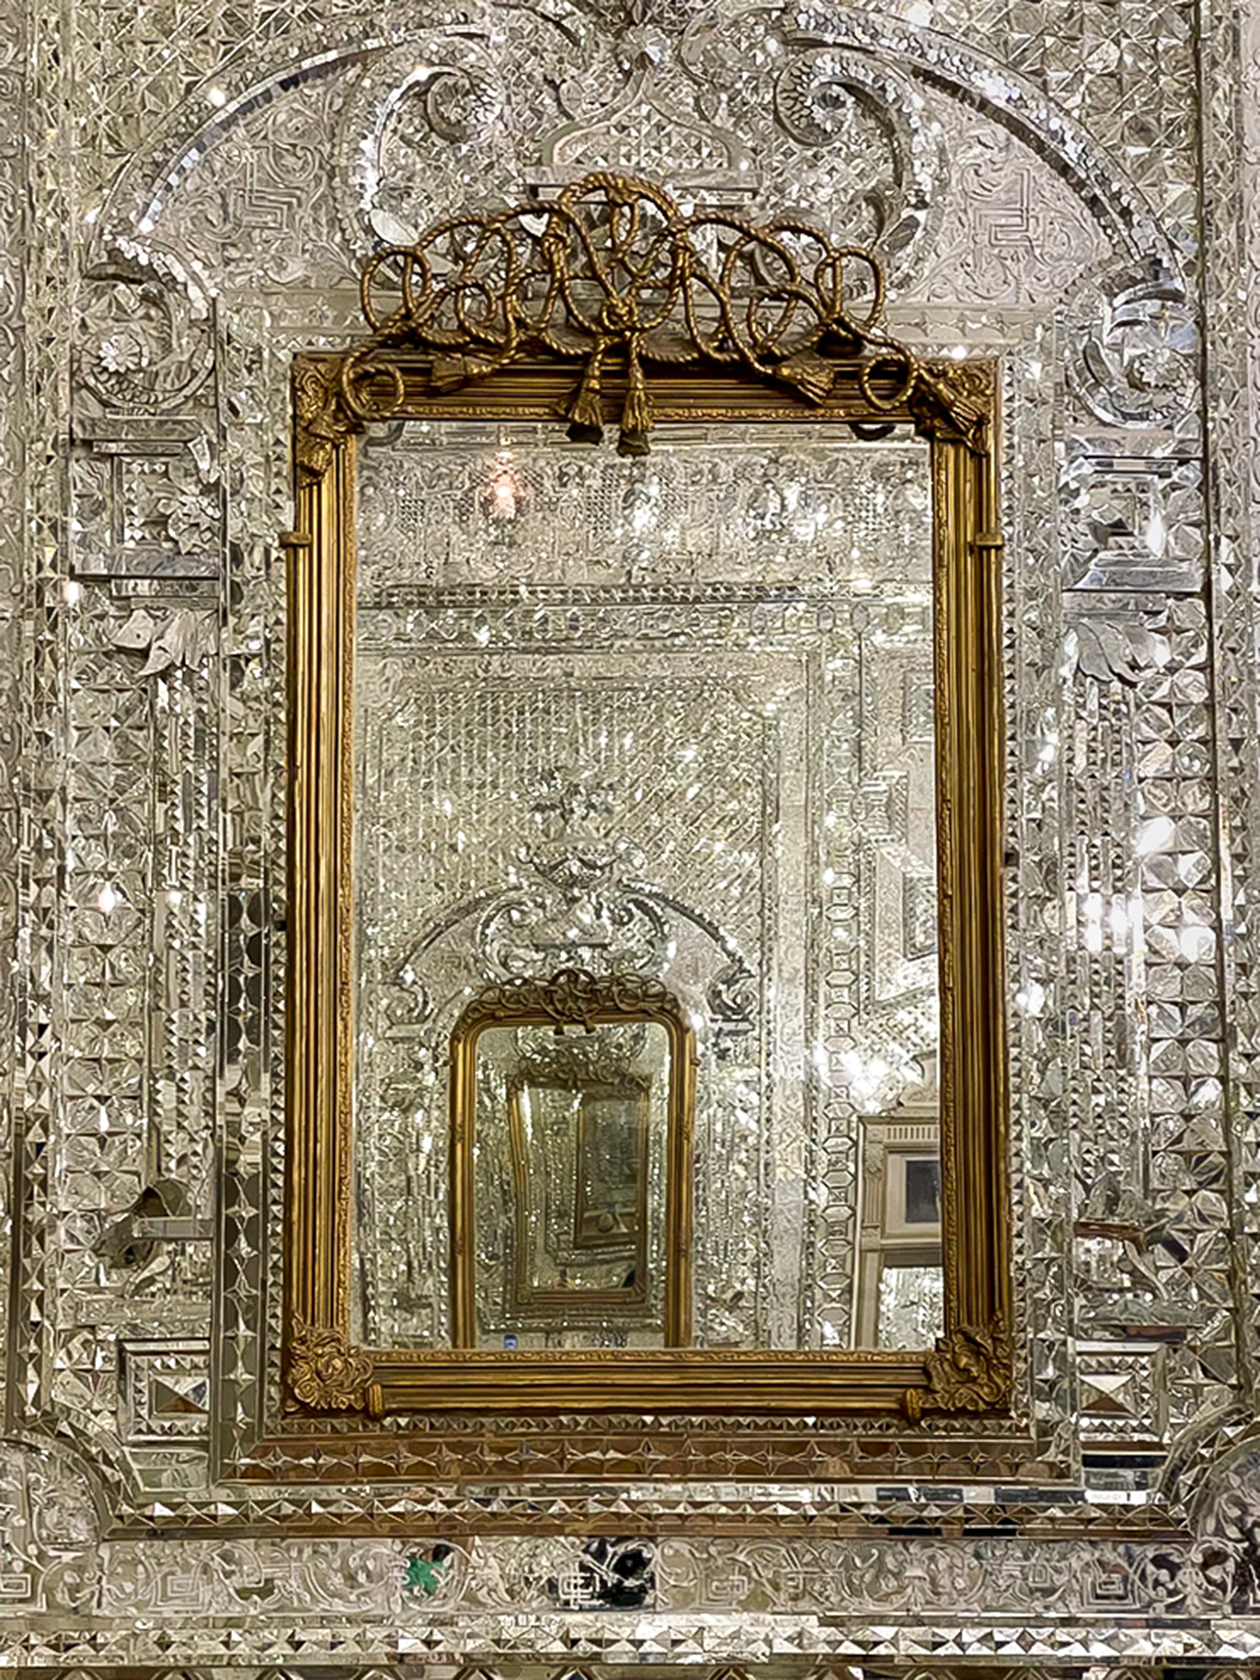 Иран славится своими зеркальными интерьерами. Эта фотография тоже сделана во дворце Голестан. Еще мы посетили мечети с убранством из зеркальных мозаик. Это очень красиво